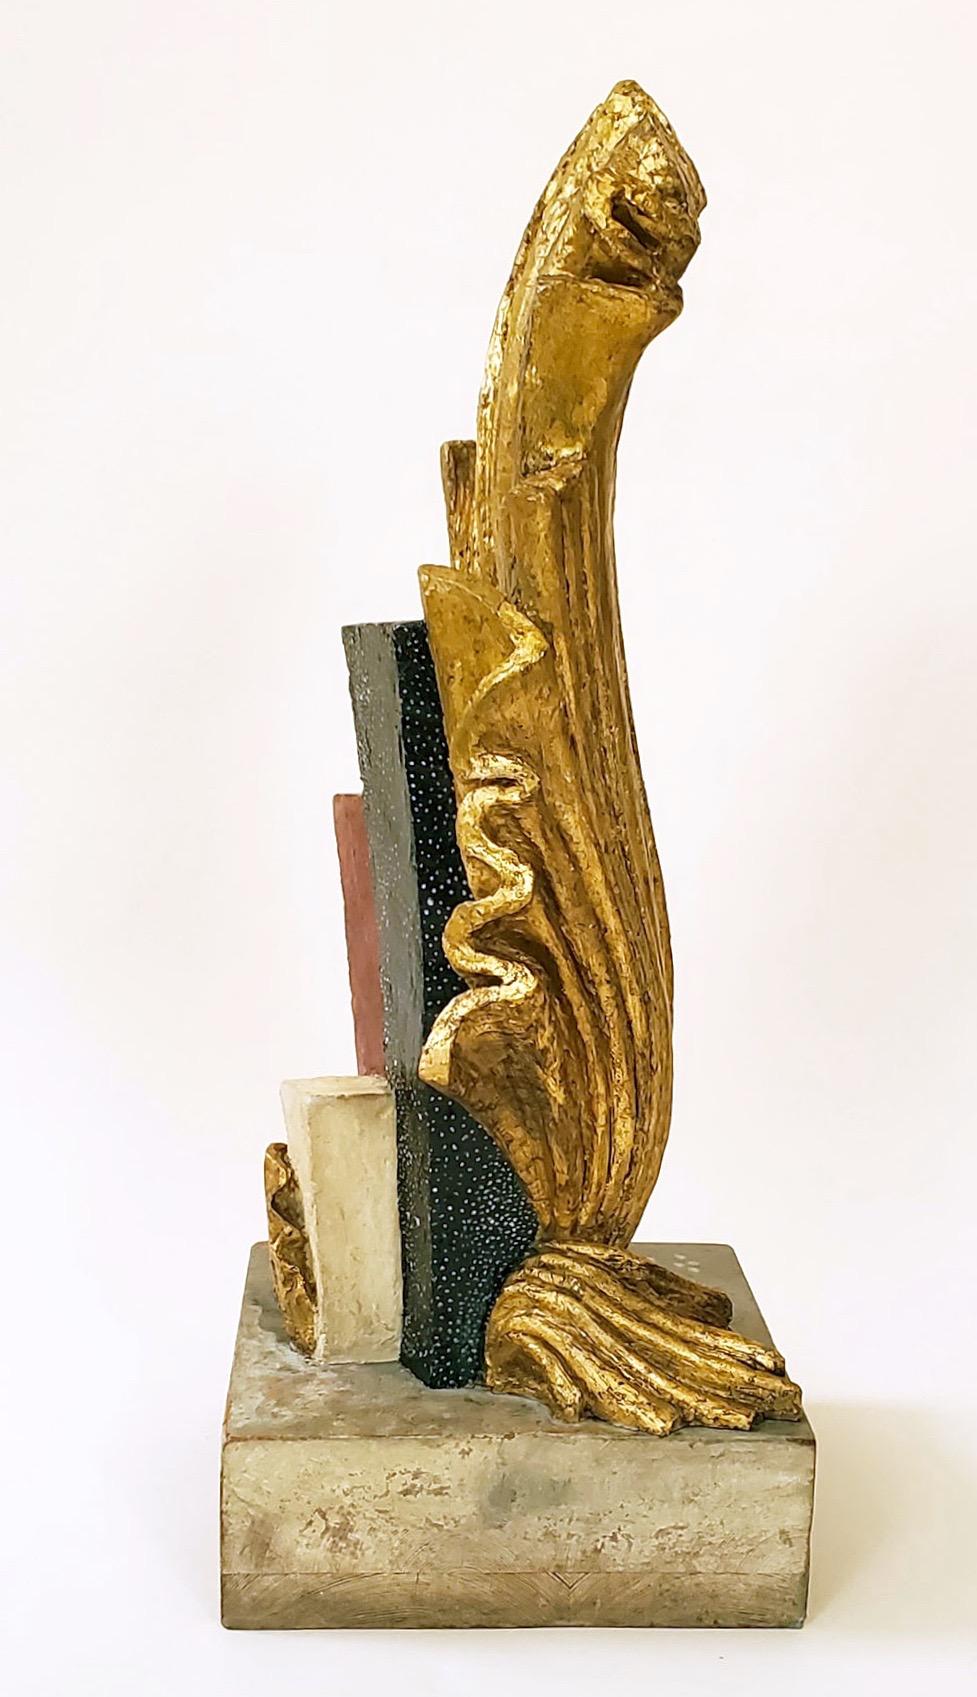 Diese abstrakte schwedische Skulptur aus bemaltem und vergoldetem Gips aus den 1920er Jahren auf einem Sockel aus bemaltem Holz ist aus allen Blickwinkeln ansprechend. Zu der Zeit und an dem Ort, an dem es hergestellt wurde, war die schwedische